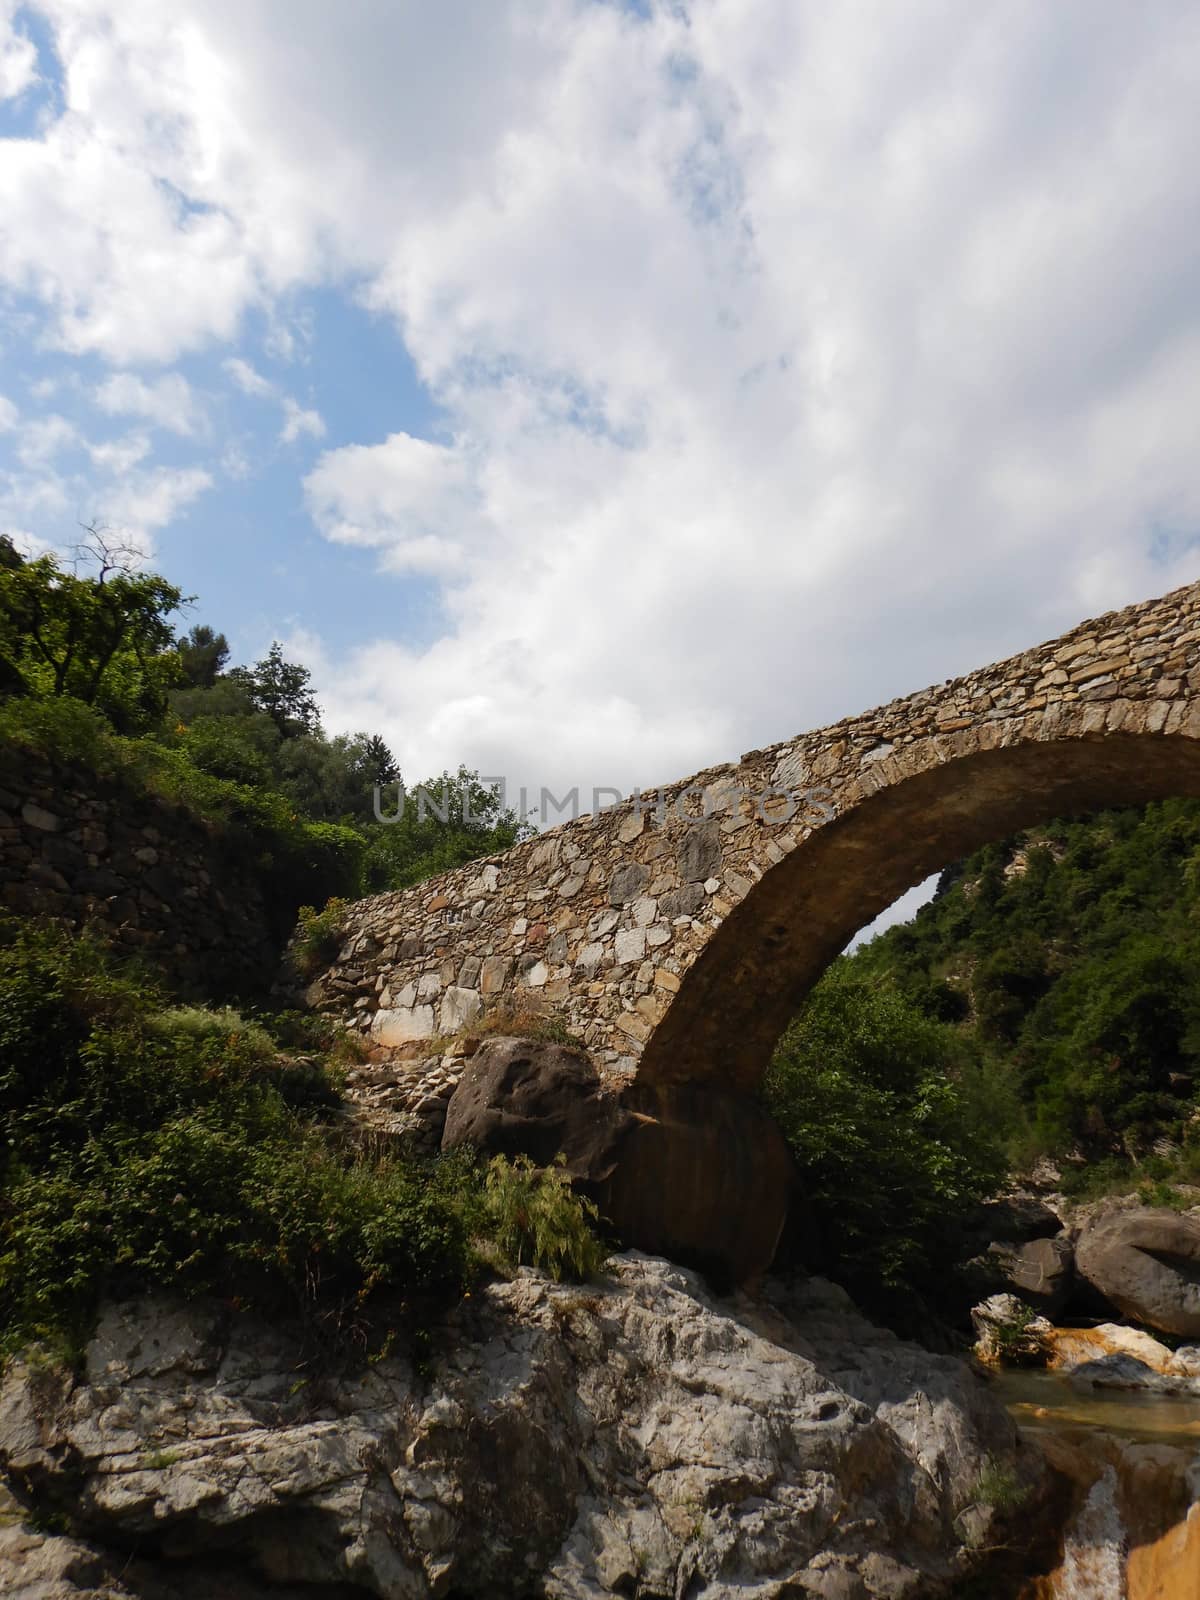 Stone bridge in the Nervia Valley near the Rio Barbaira stream, Rocchetta Nervina, Liguria - Italy